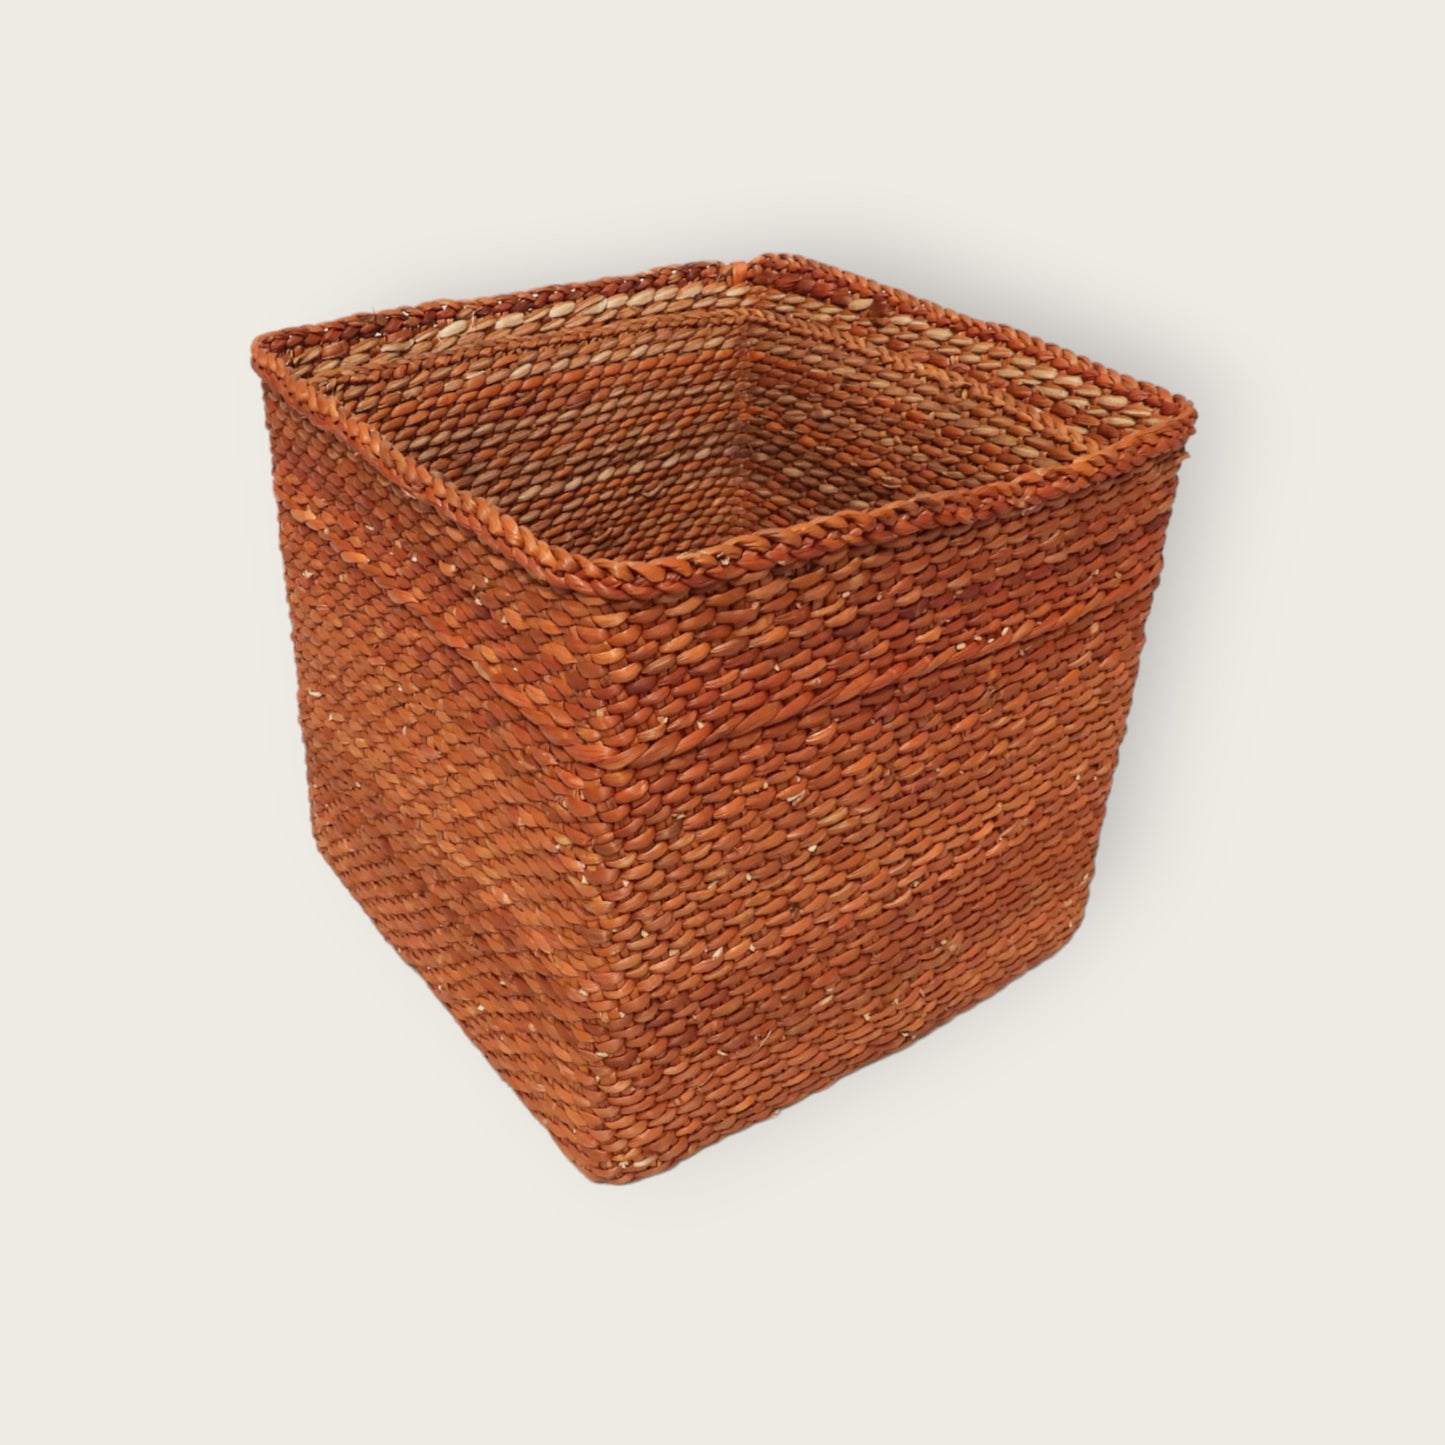 PEMBE Basket - Rust